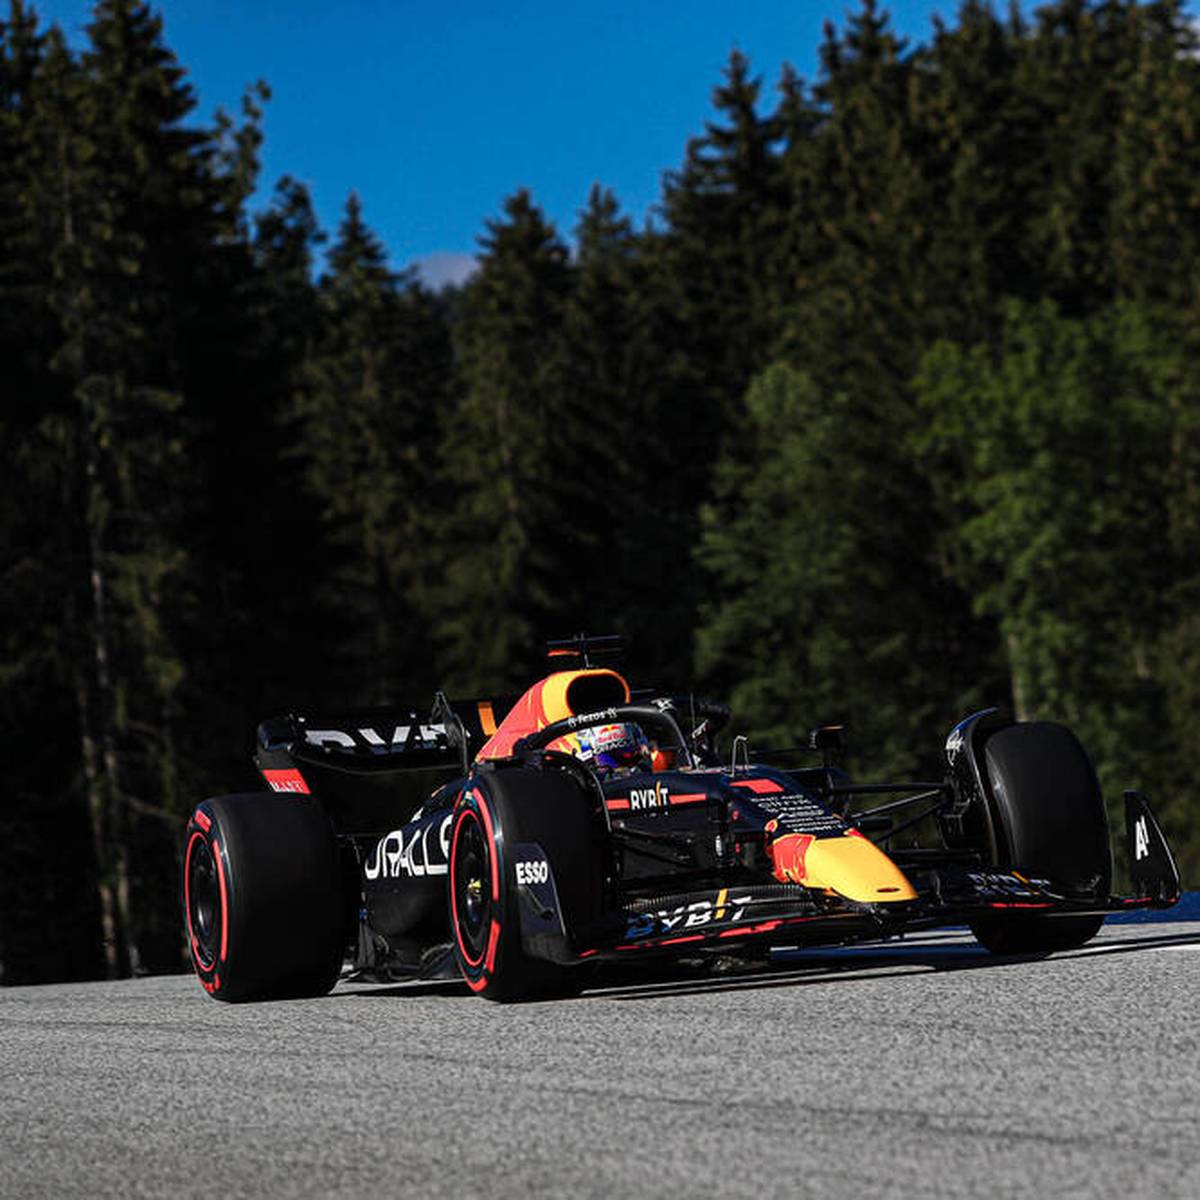 Formel 1, Spielberg Sprint-Rennen mit Verstappen, Hamilton, Schumacher und Vettel LIVE im TV, Stream, Ticker